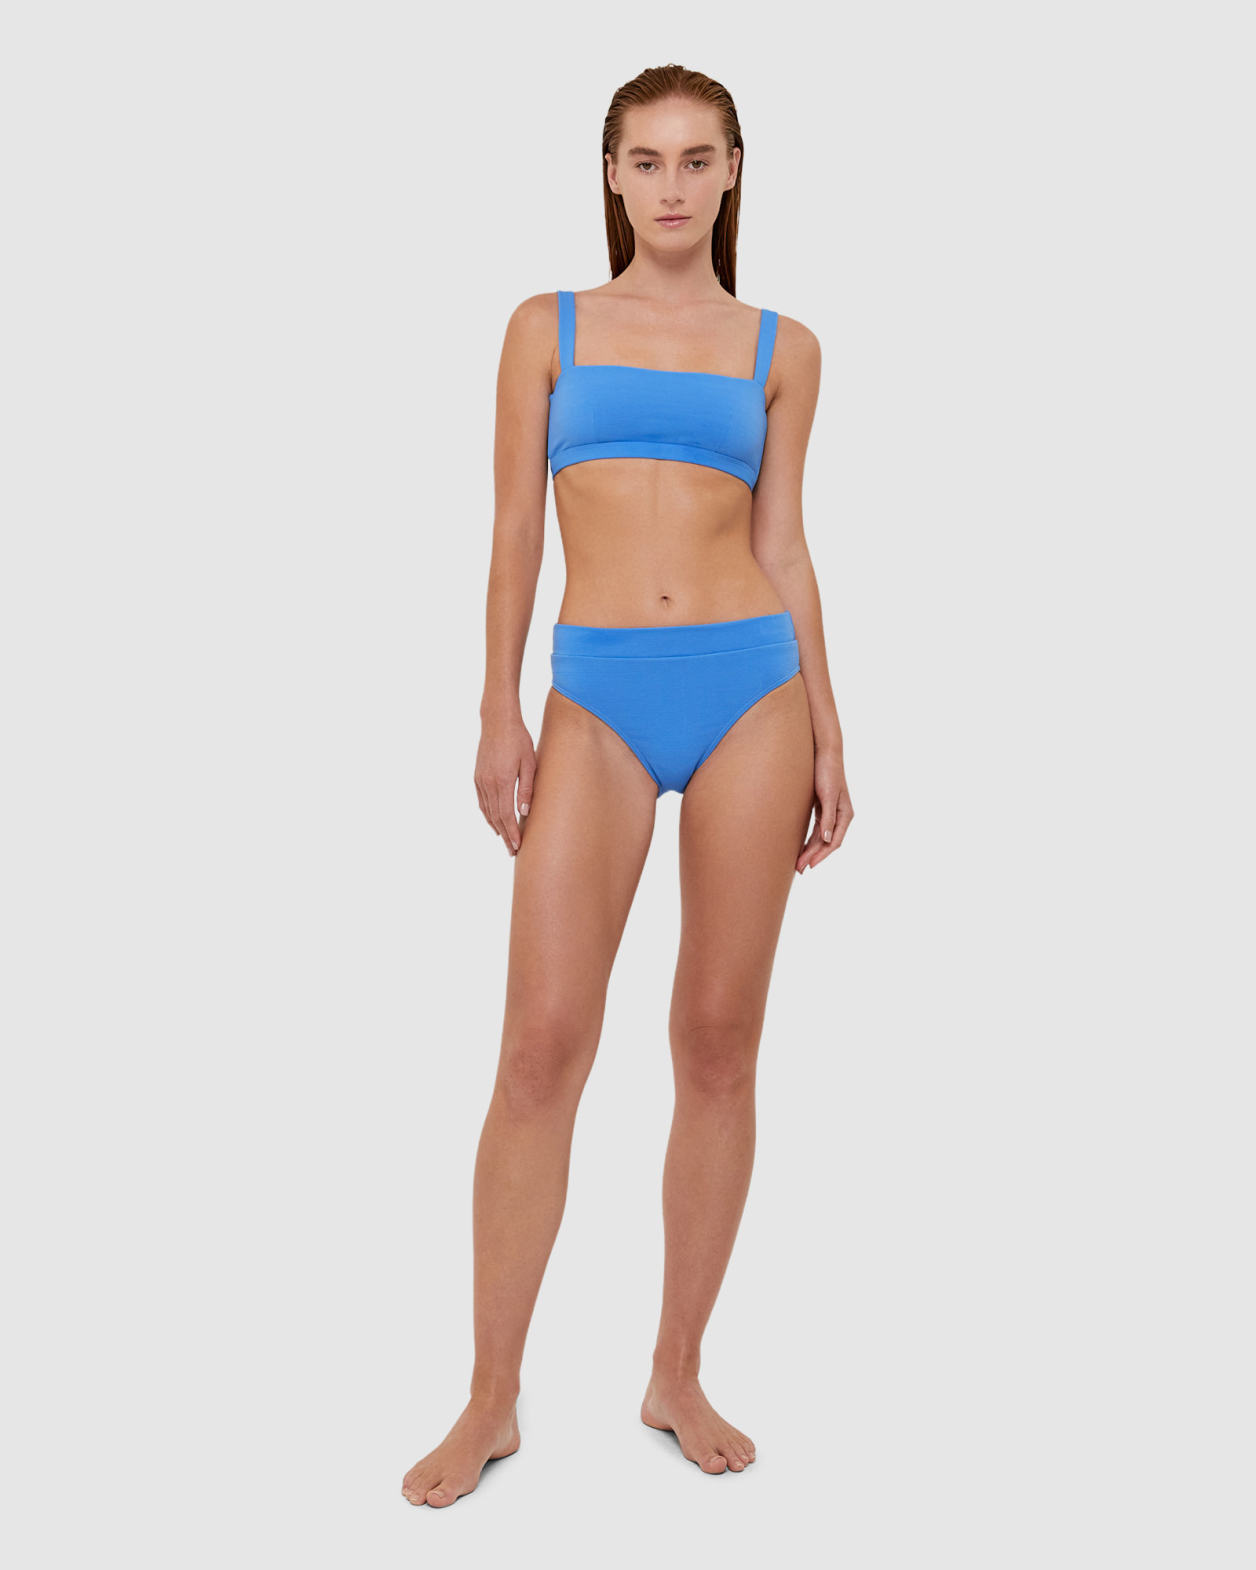 Koa Bikini Balconette Bra in CORNFLOWER